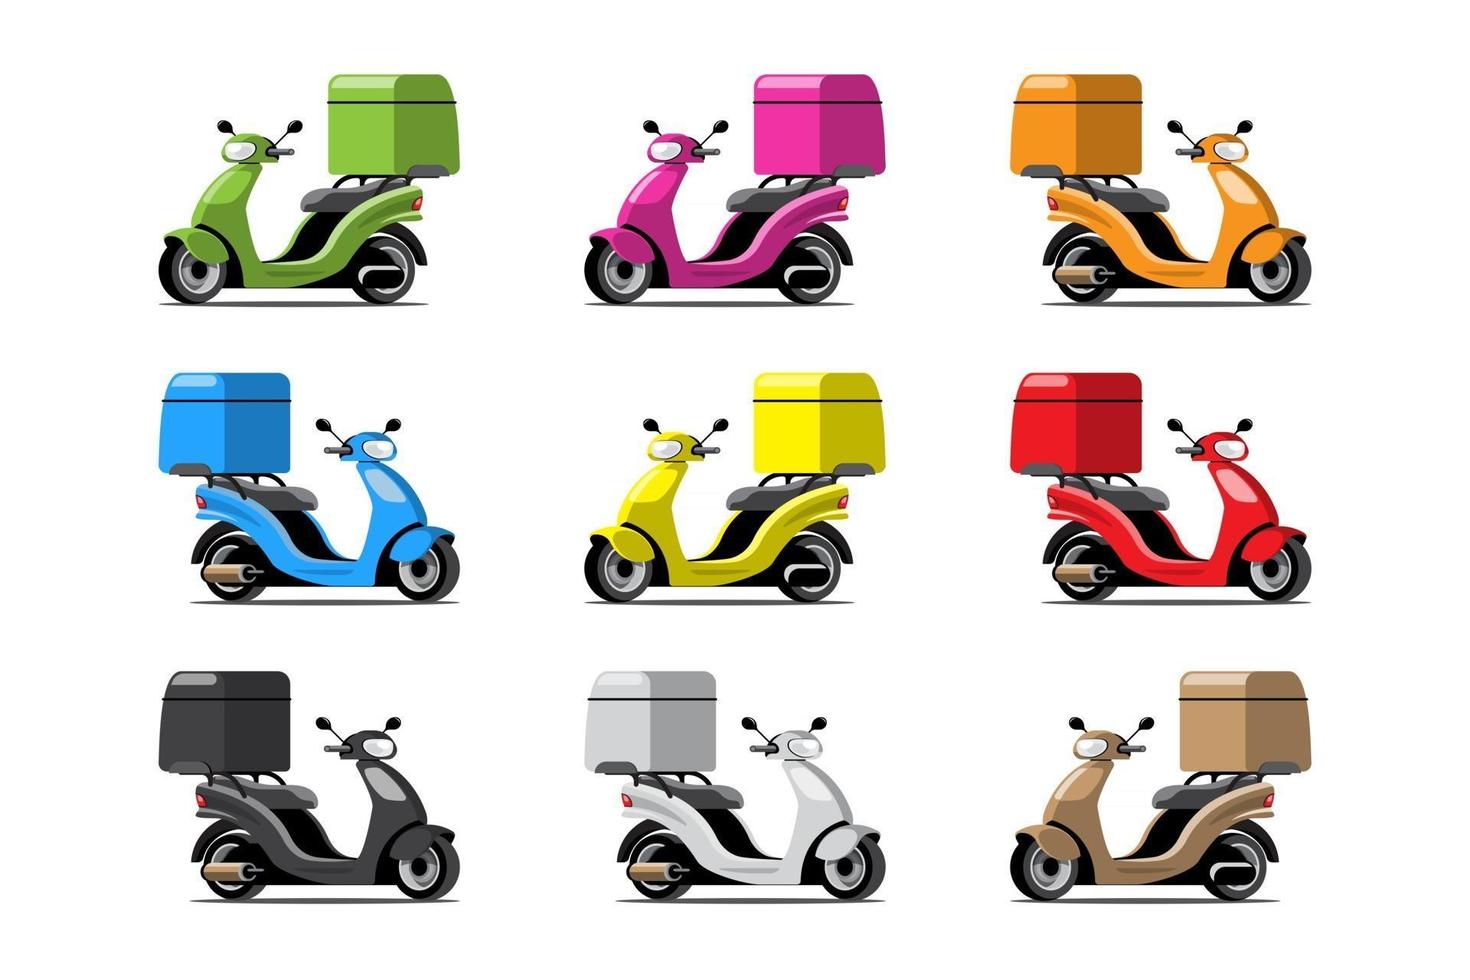 grand ensemble d'icônes colorées vectorielles moto isolées, illustrations plates de diverses motos colorées. livraison vélo, livraison de pizza et de nourriture, livraison instantanée, livraison en ligne. vecteur